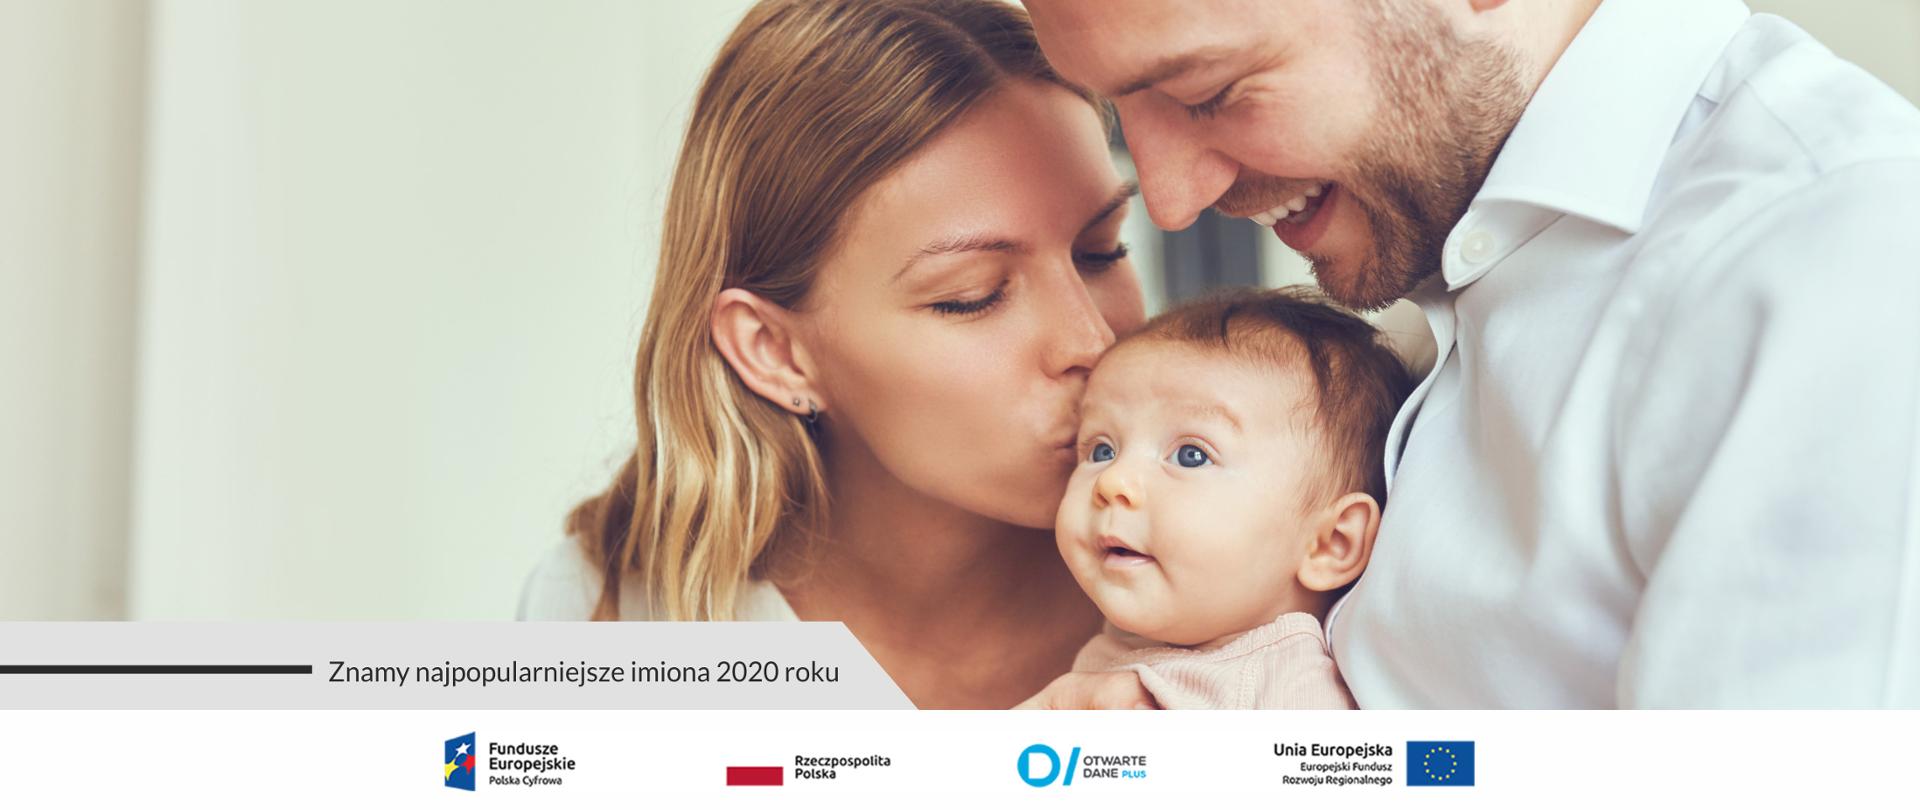 Grafika. Uśmiechnięci rodzice przytulają kilkumiesięczne dziecko. Obok napis: Znamy najpopularniejsze imiona 2020 roku. 